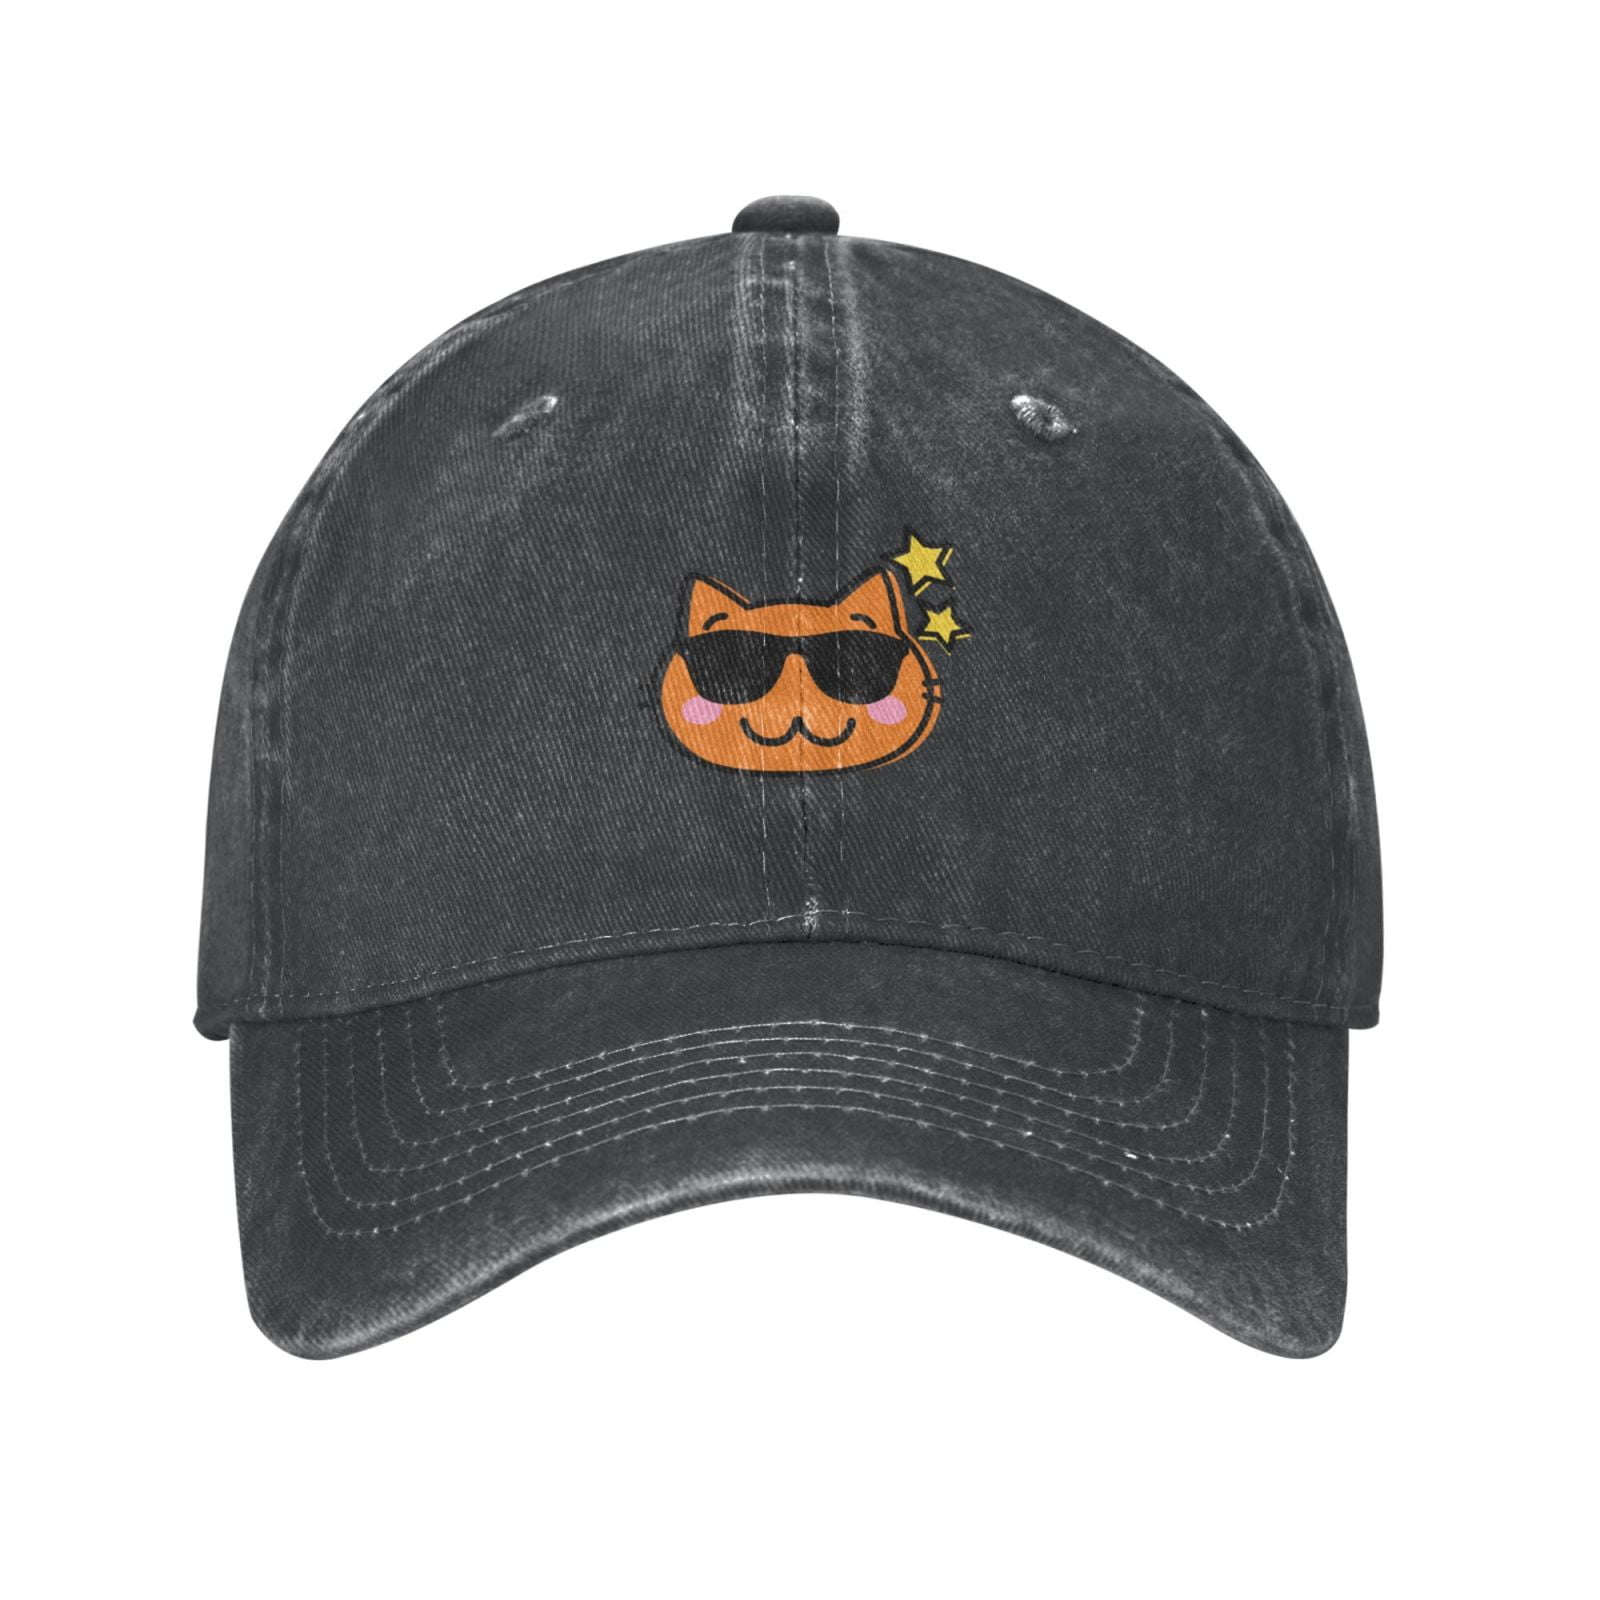 Deep Adjustable Cap - Outdoor Hat Heather Cap, Baseball Cowboy Classic Happy Hat, Mens Cat- Curved Sports Casual Brim Cartoon